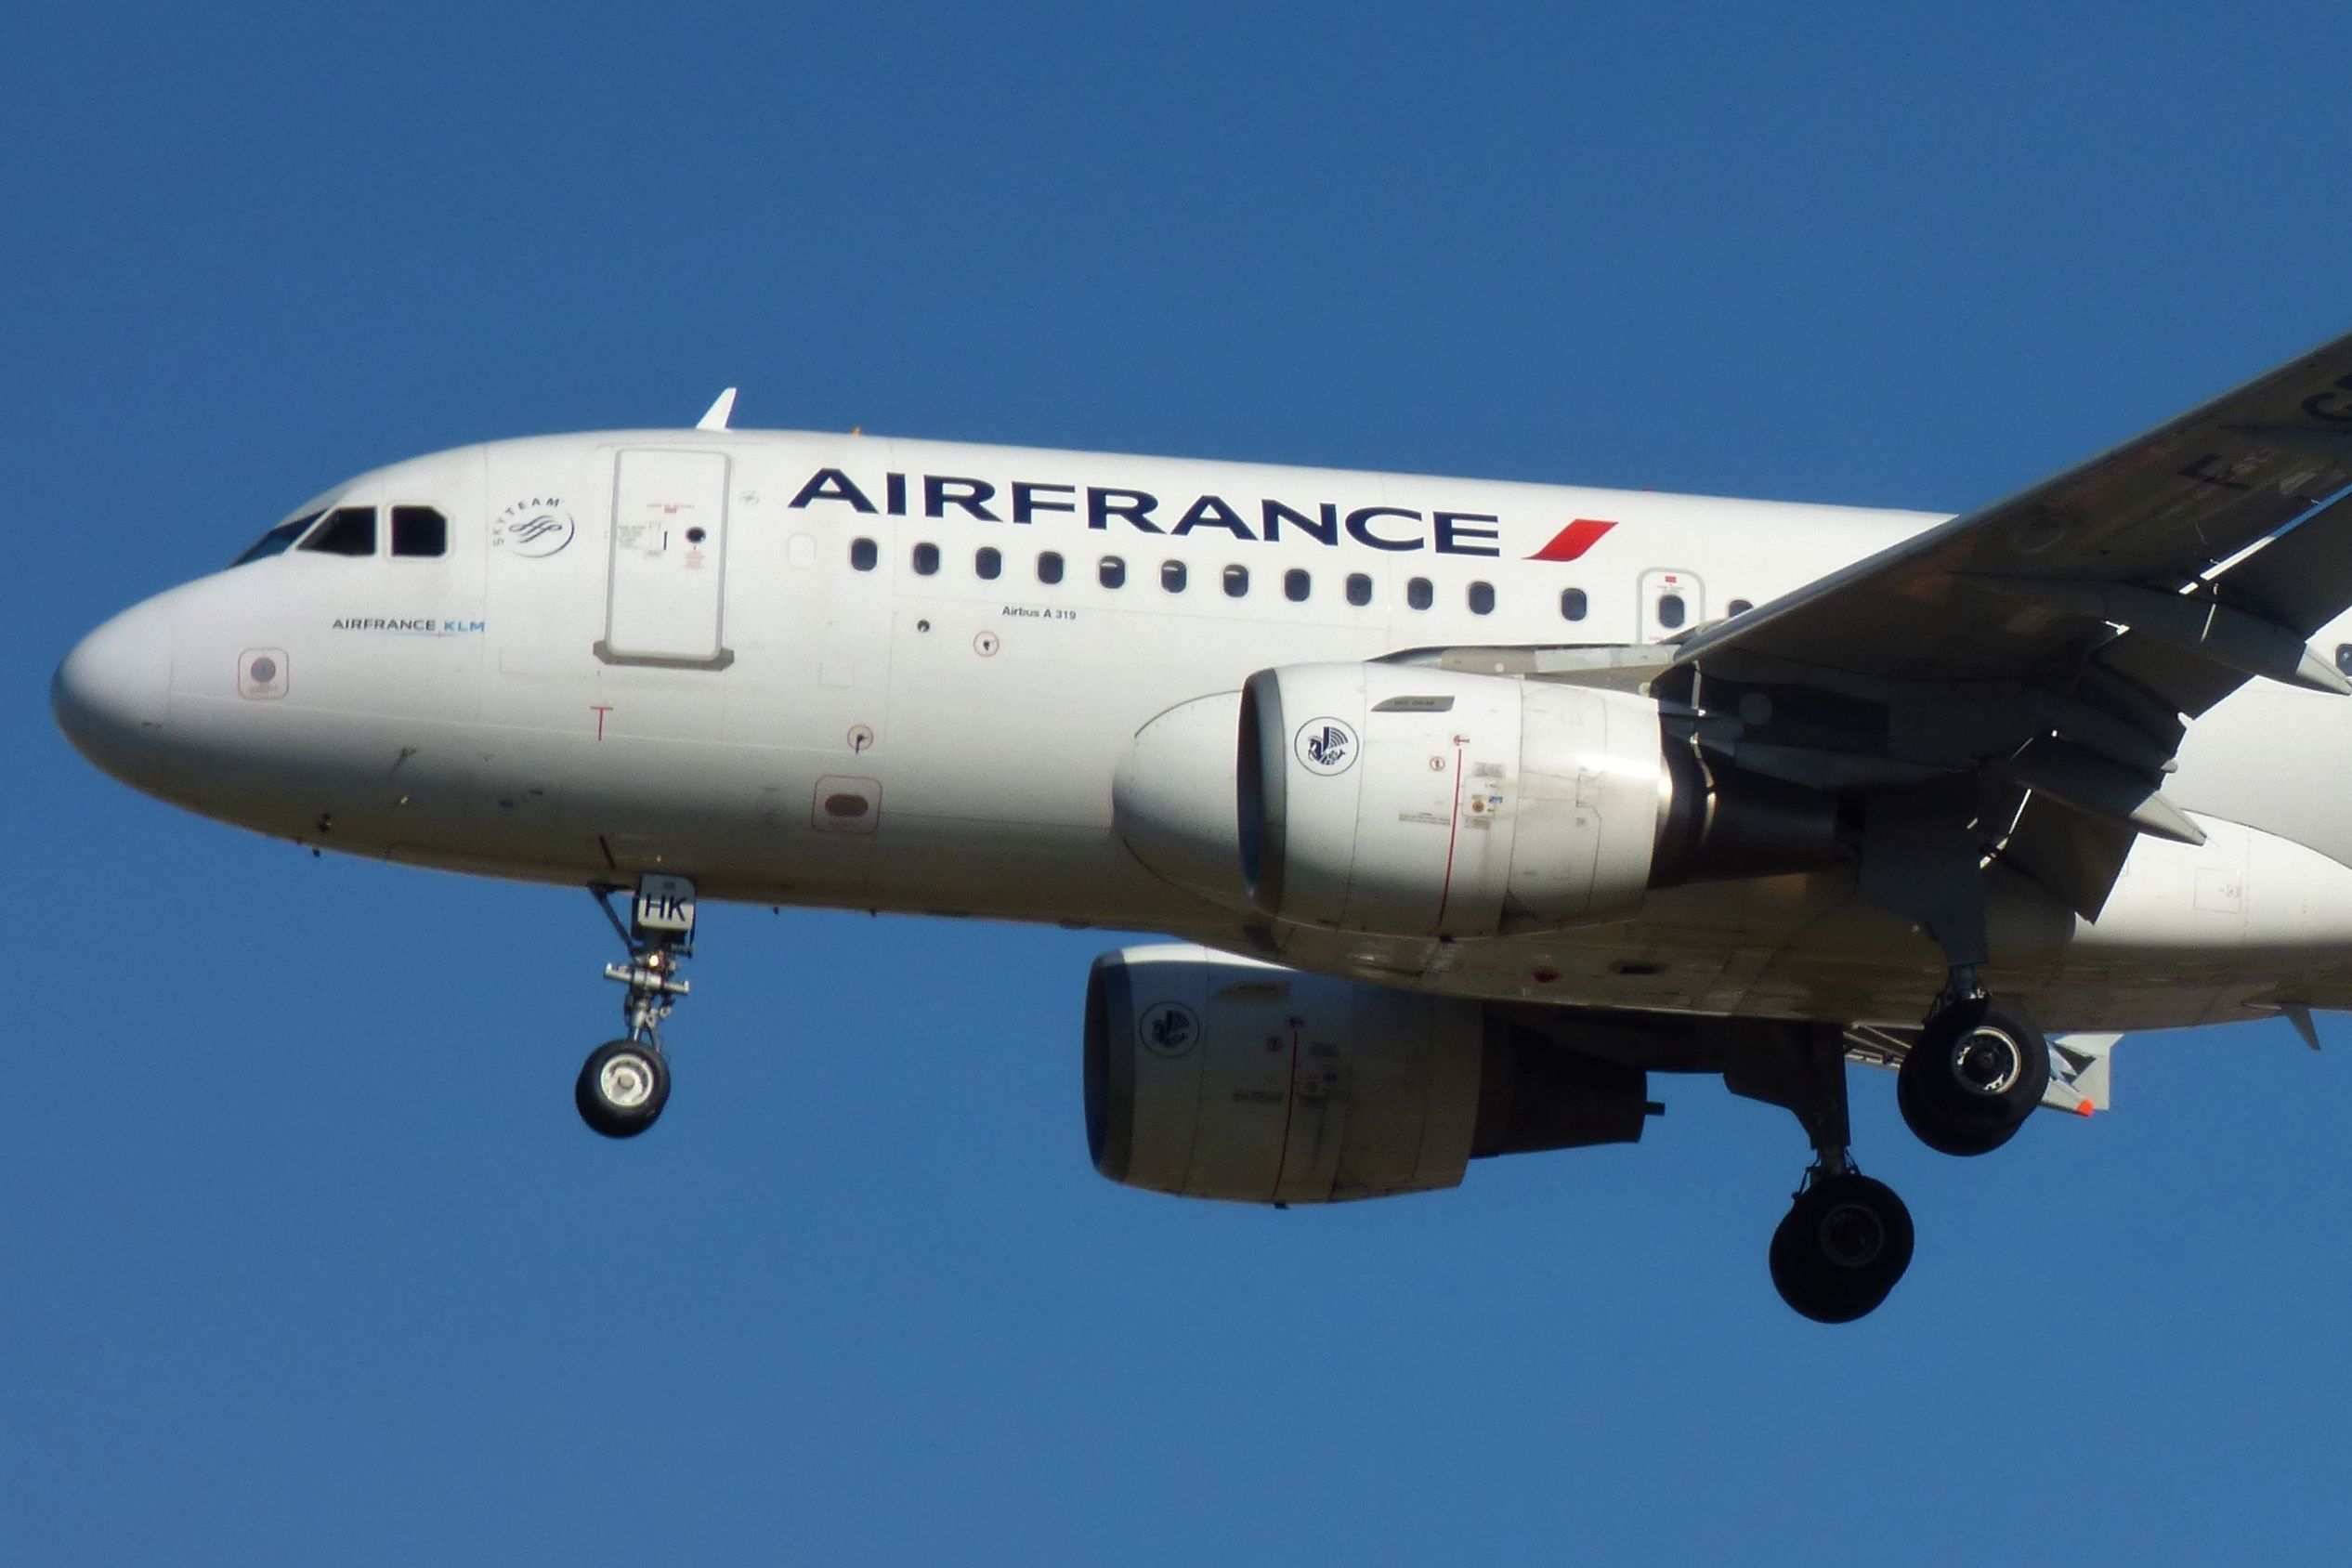 Air France Airbus A319 landing at London Heathrow